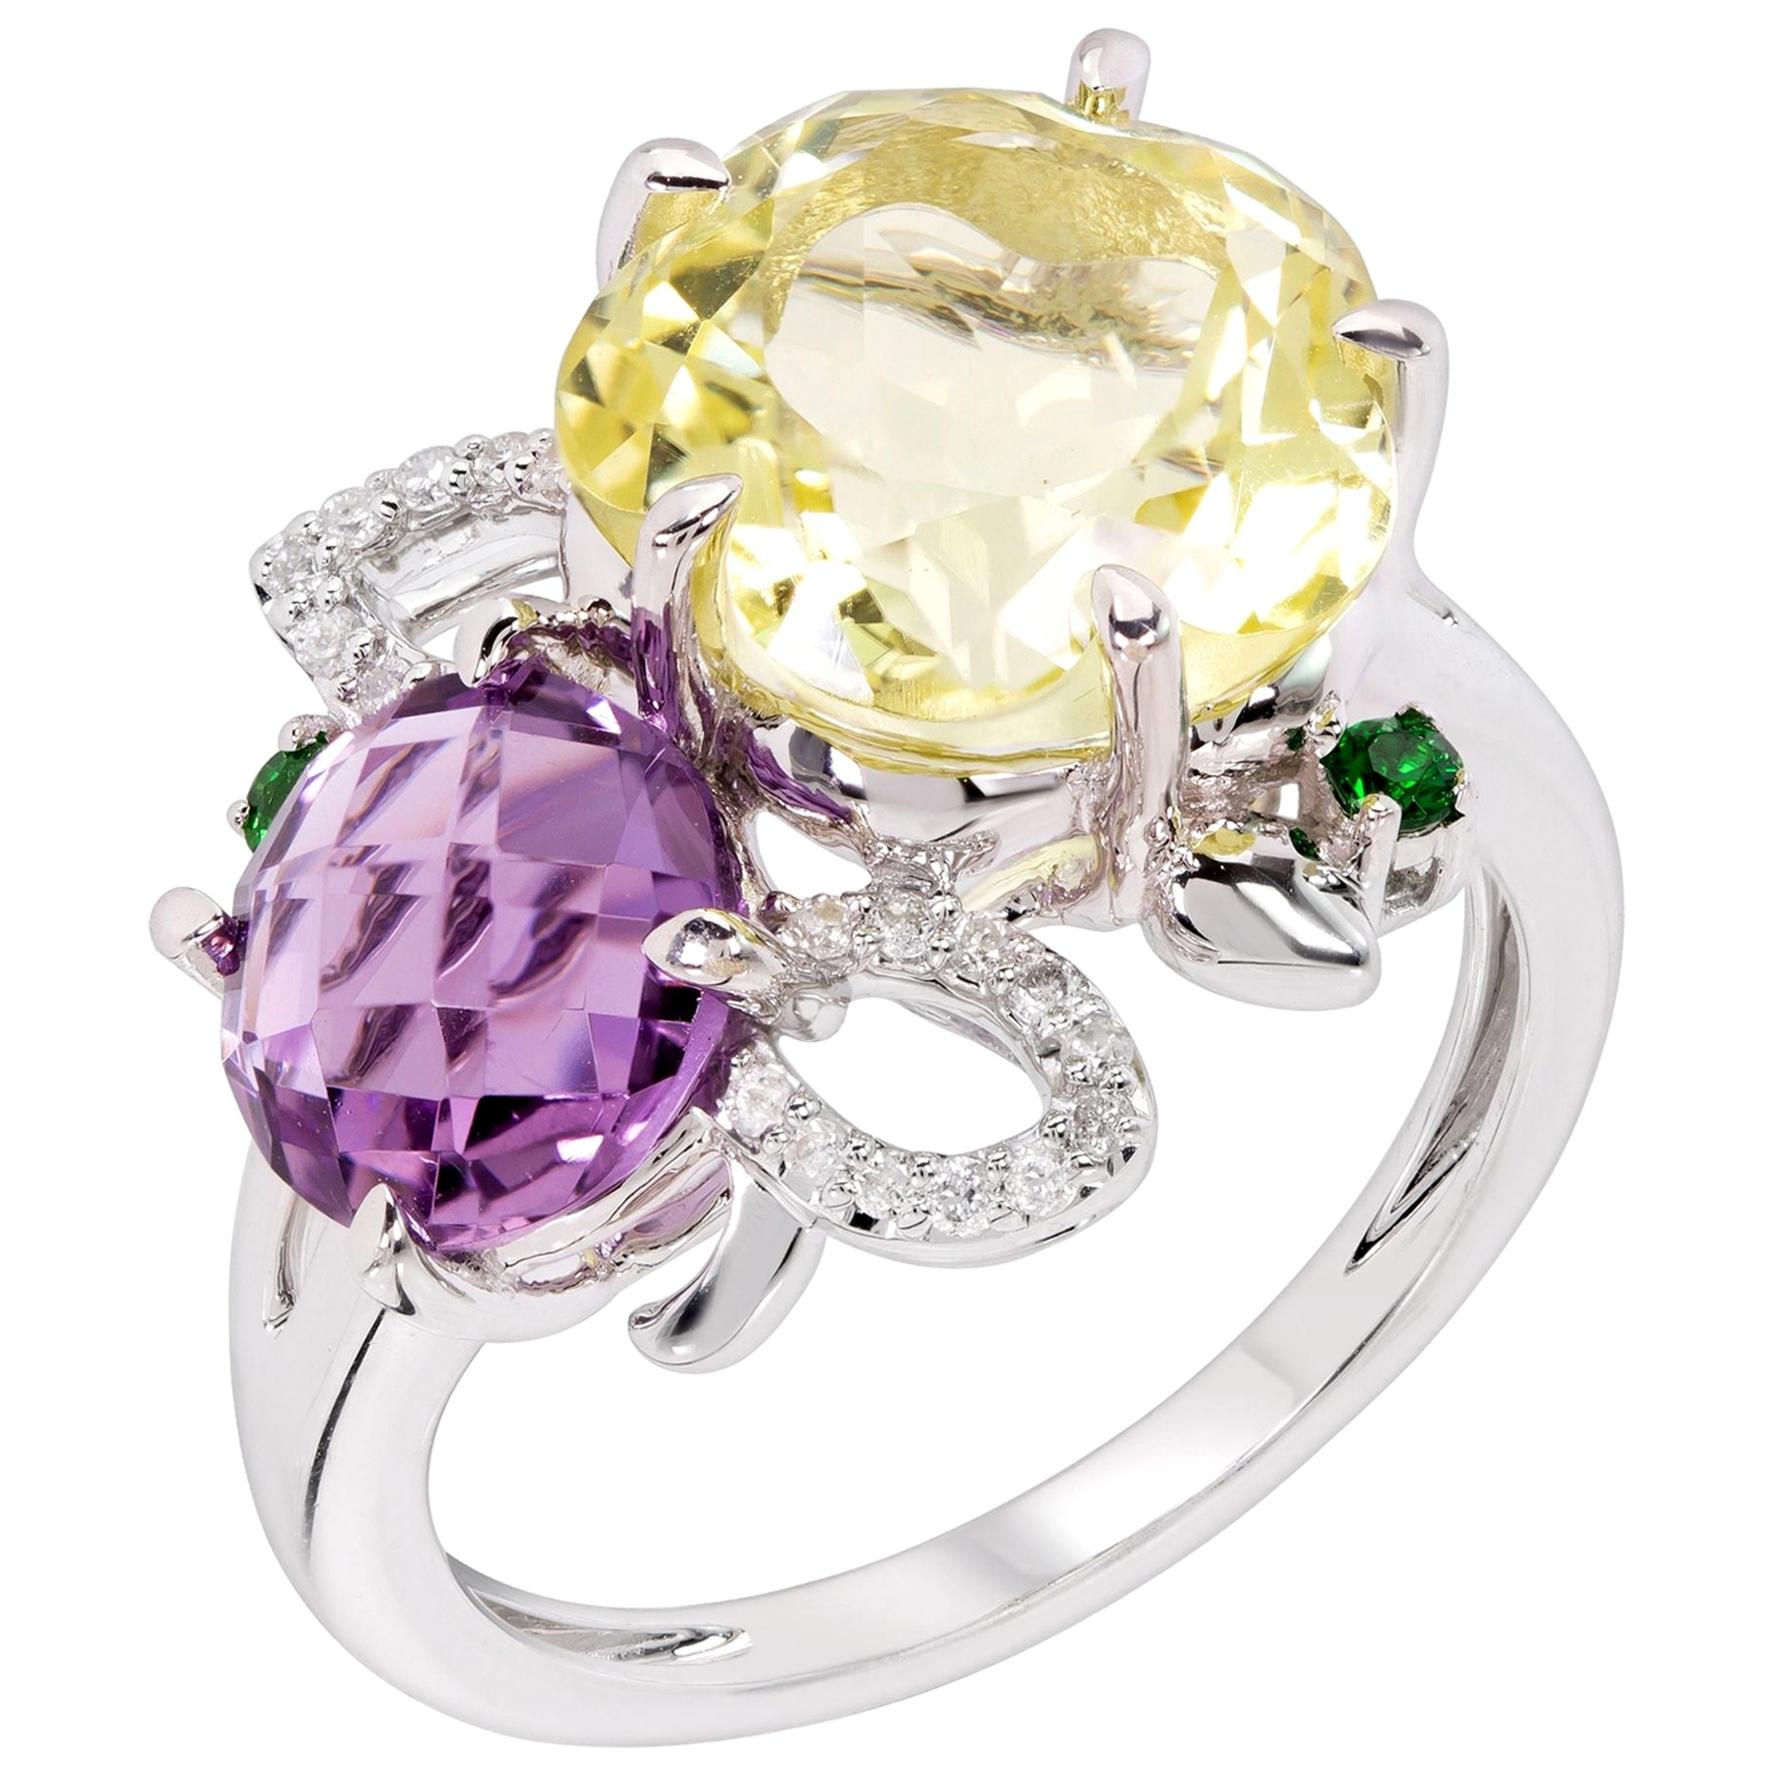 Rhodium-Plated Amethsyt, Lemon Quartz, Tsavorite and Diamonds Fashion Ring For Sale